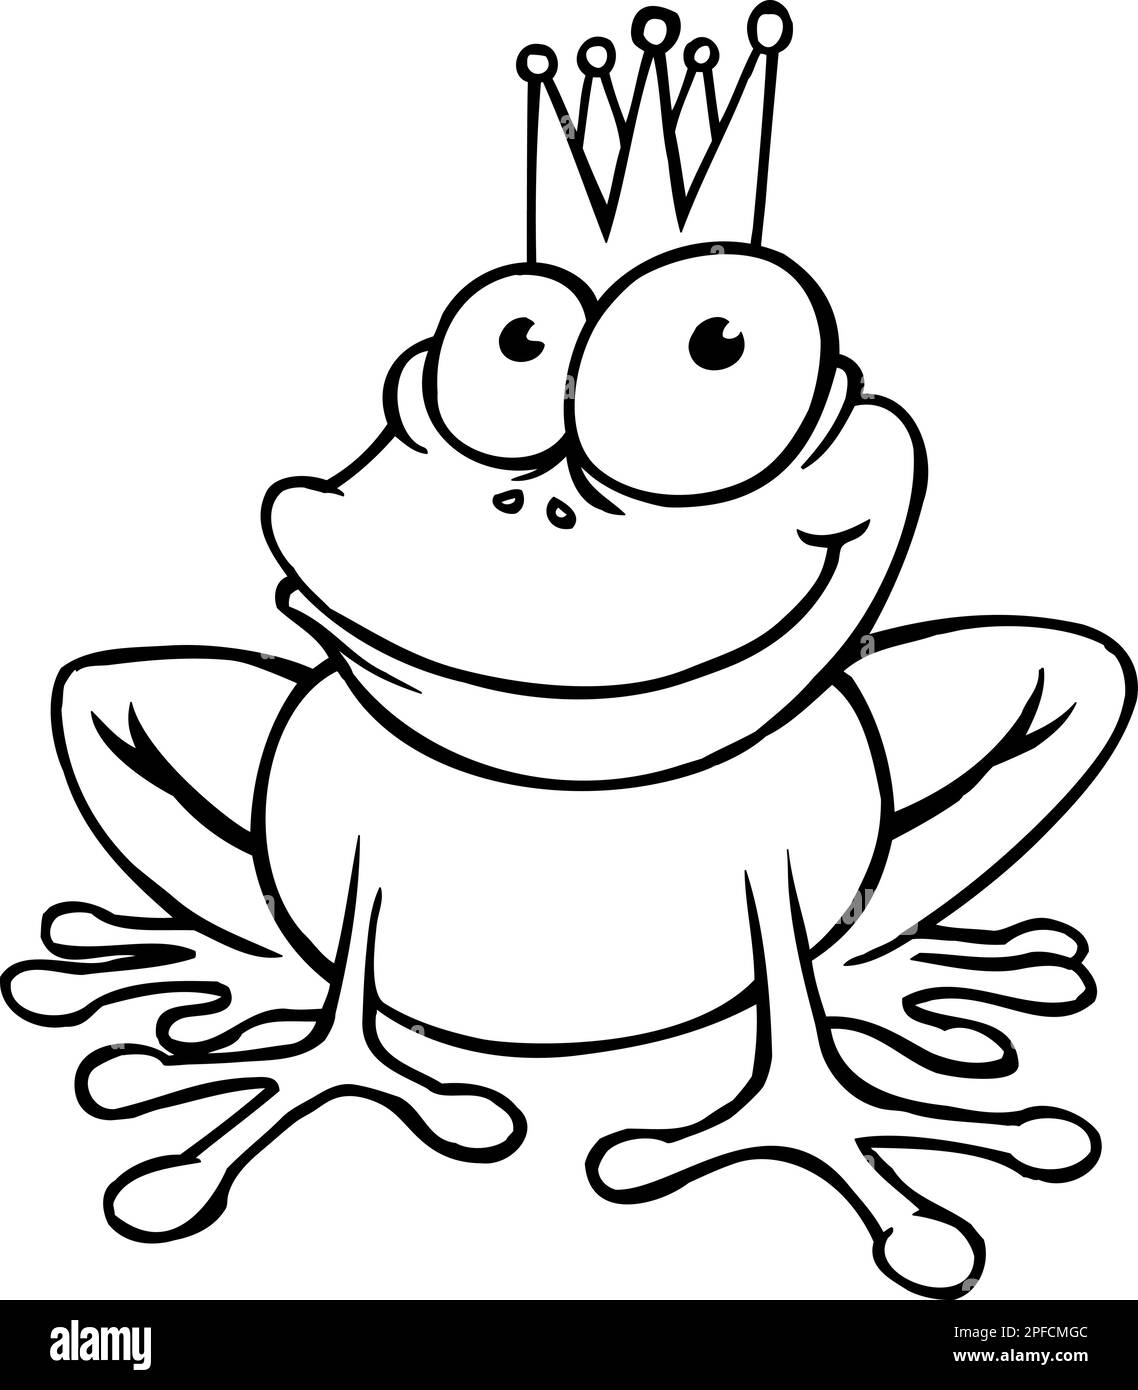 Prince grenouille souriant, isolé sur blanc Illustration de Vecteur